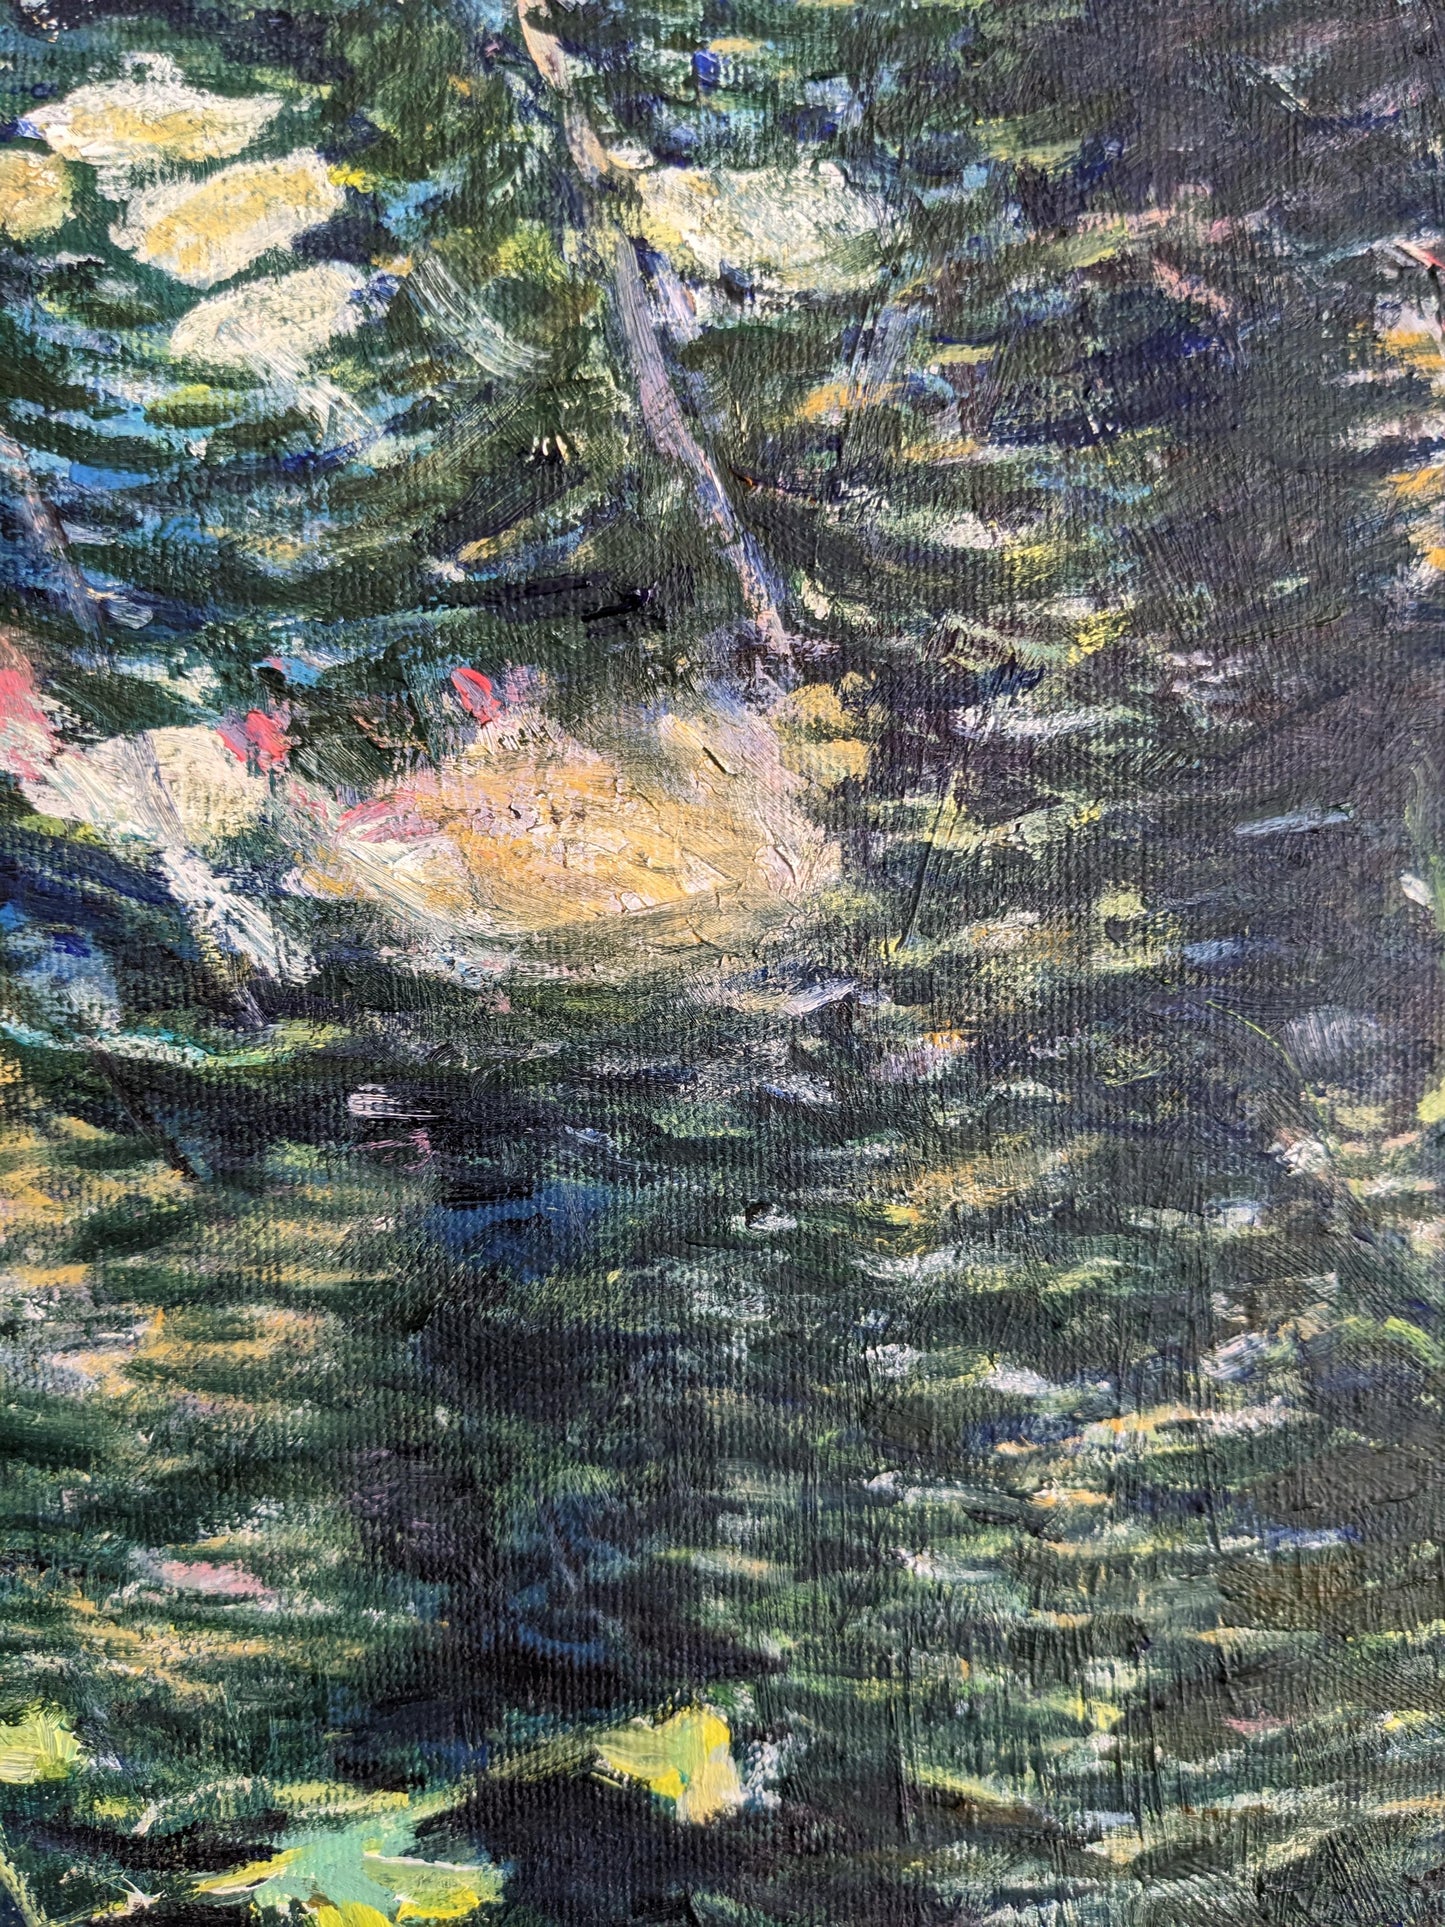 『湧き池(Spring pond)』 - FROM ARTIST